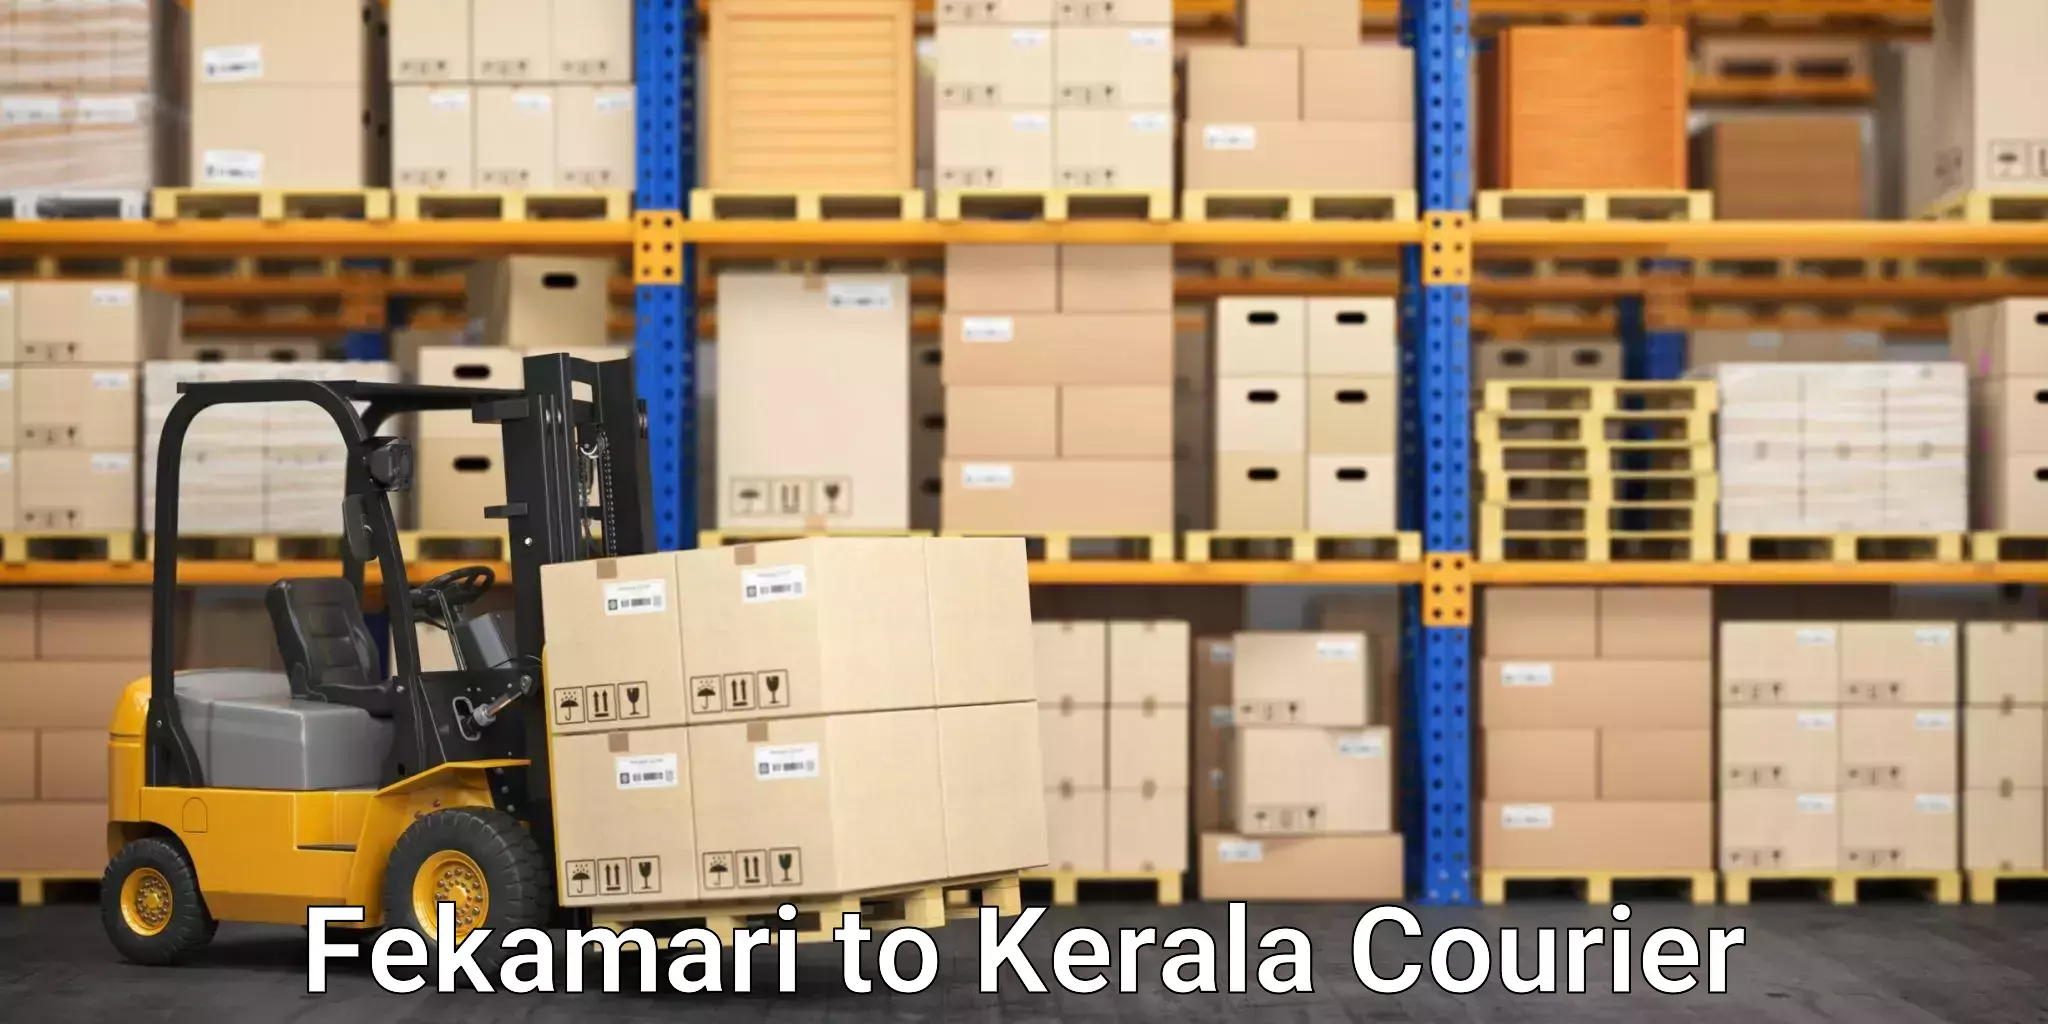 High-priority parcel service Fekamari to Munnar